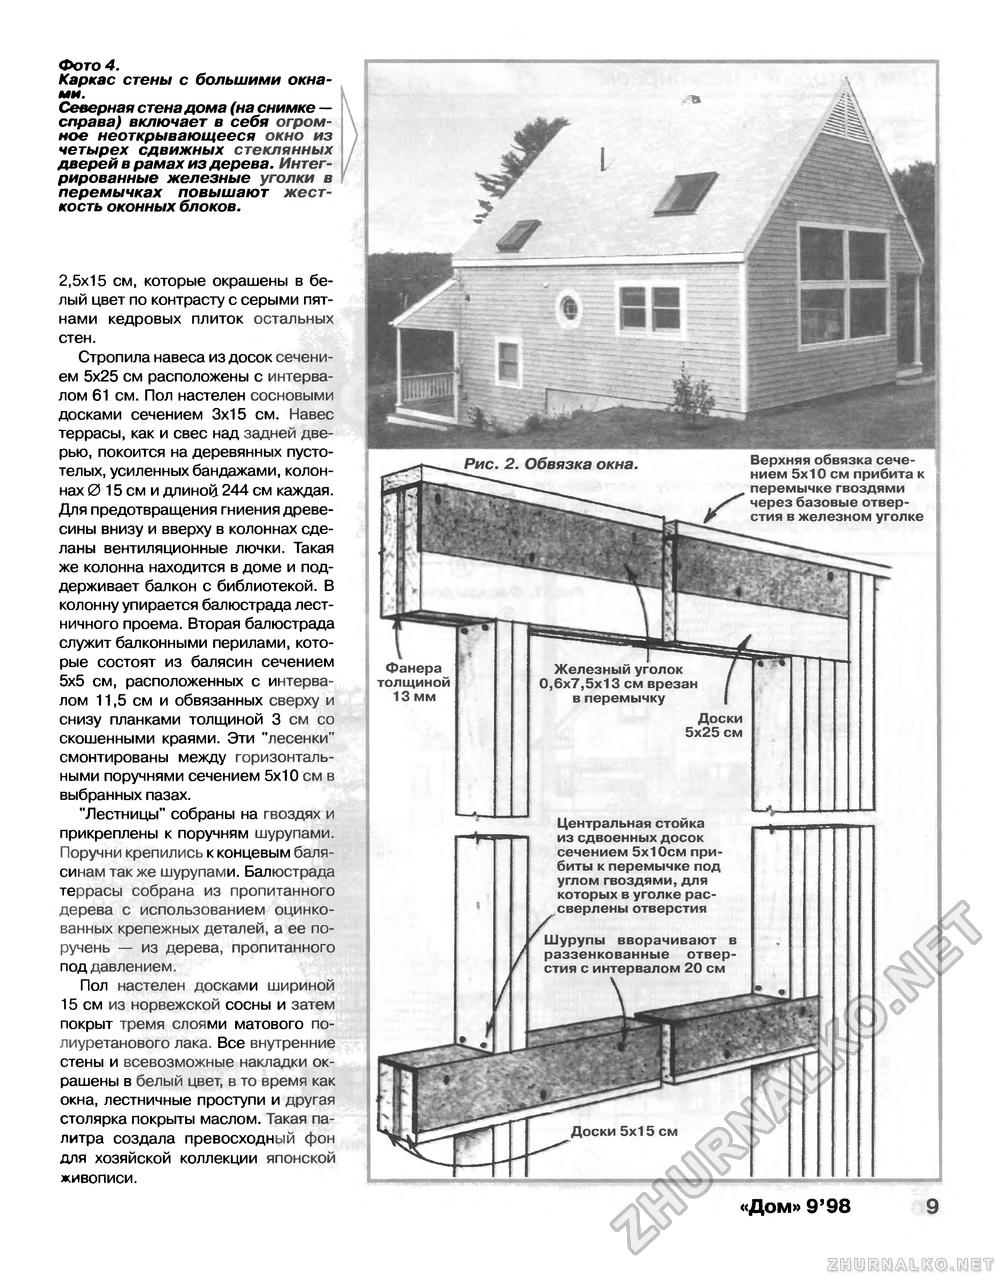 Дом 1998-09, страница 9